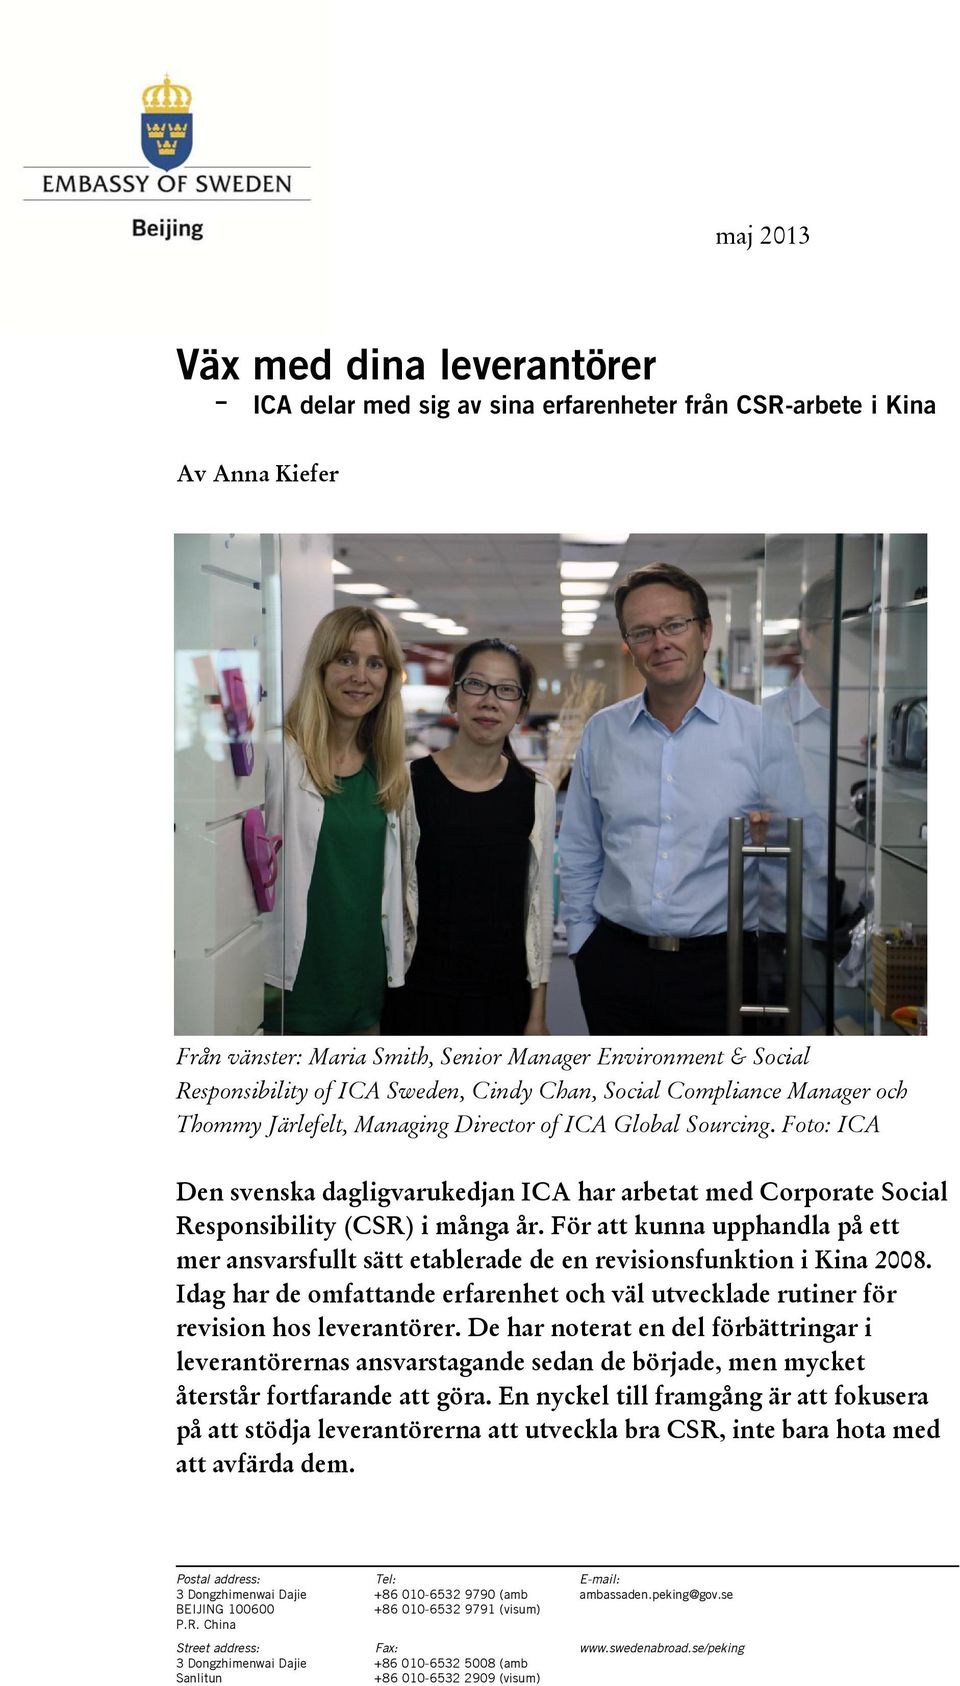 Foto: ICA Den svenska dagligvarukedjan ICA har arbetat med Corporate Social Responsibility (CSR) i många år.